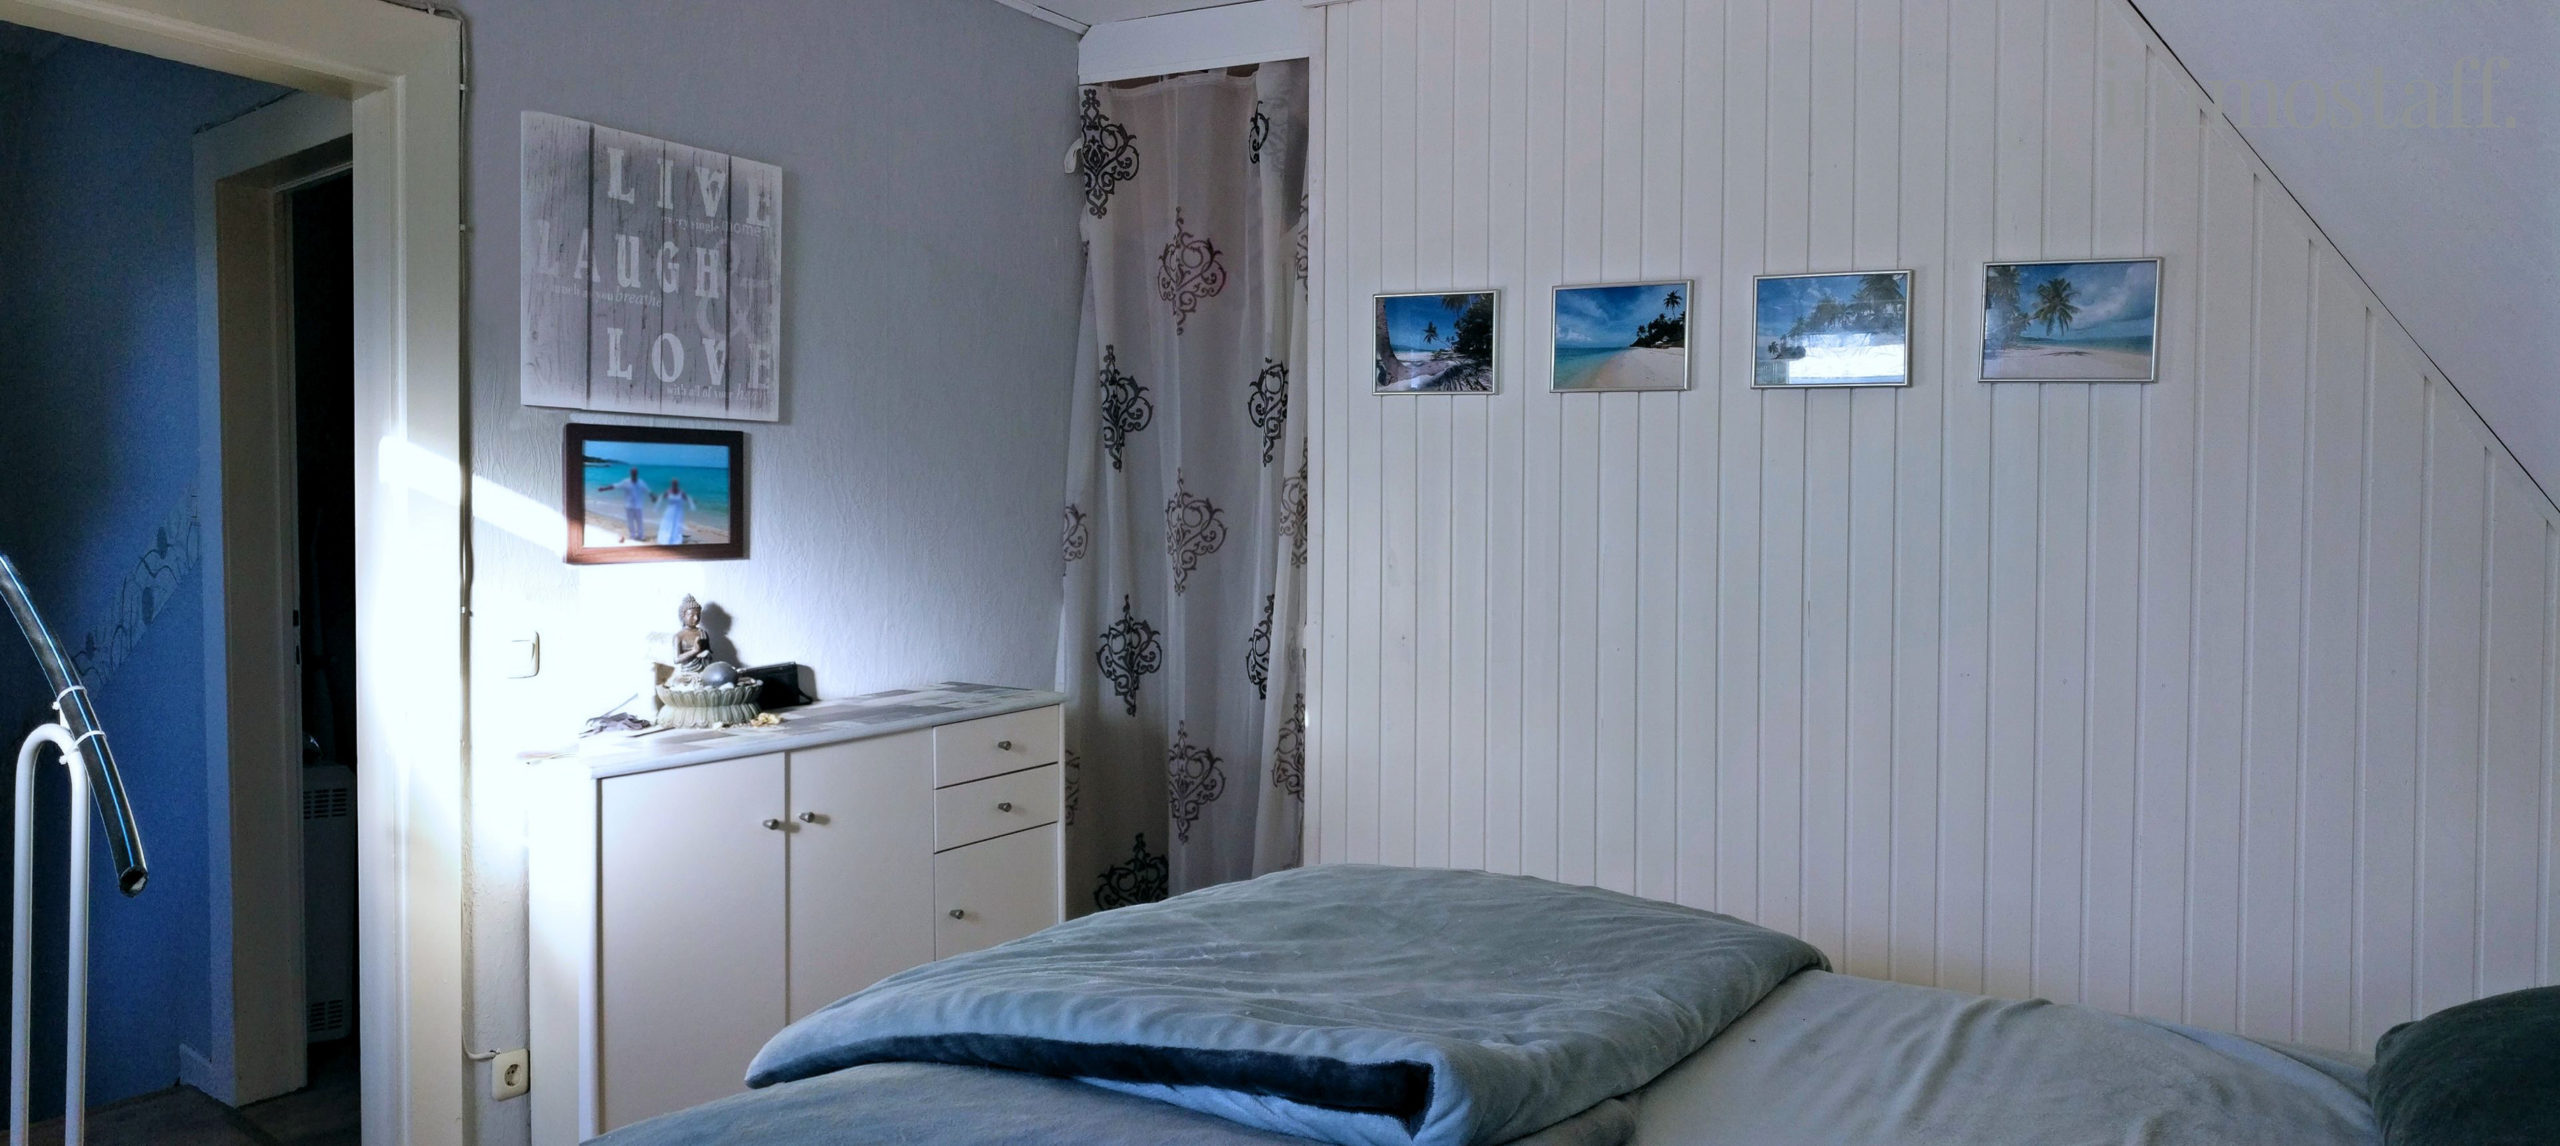 Schlafzimmer mit begehbaren Kleiderschrank im OG